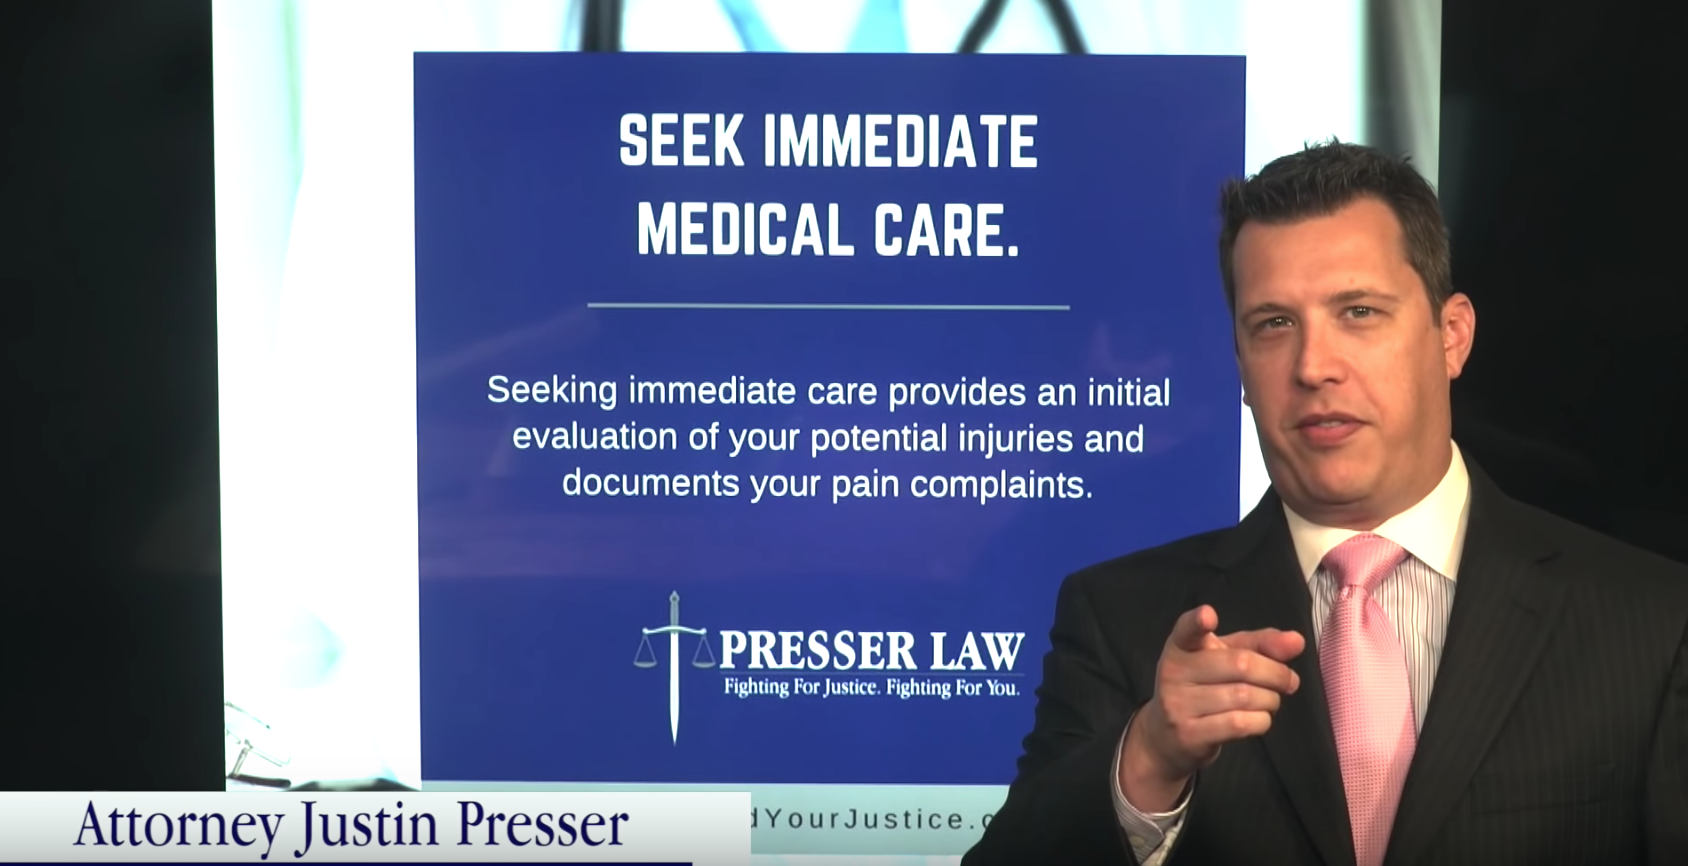 Beneficios de la atención médica inmediata en casos de lesiones por el abogado Justin Presser